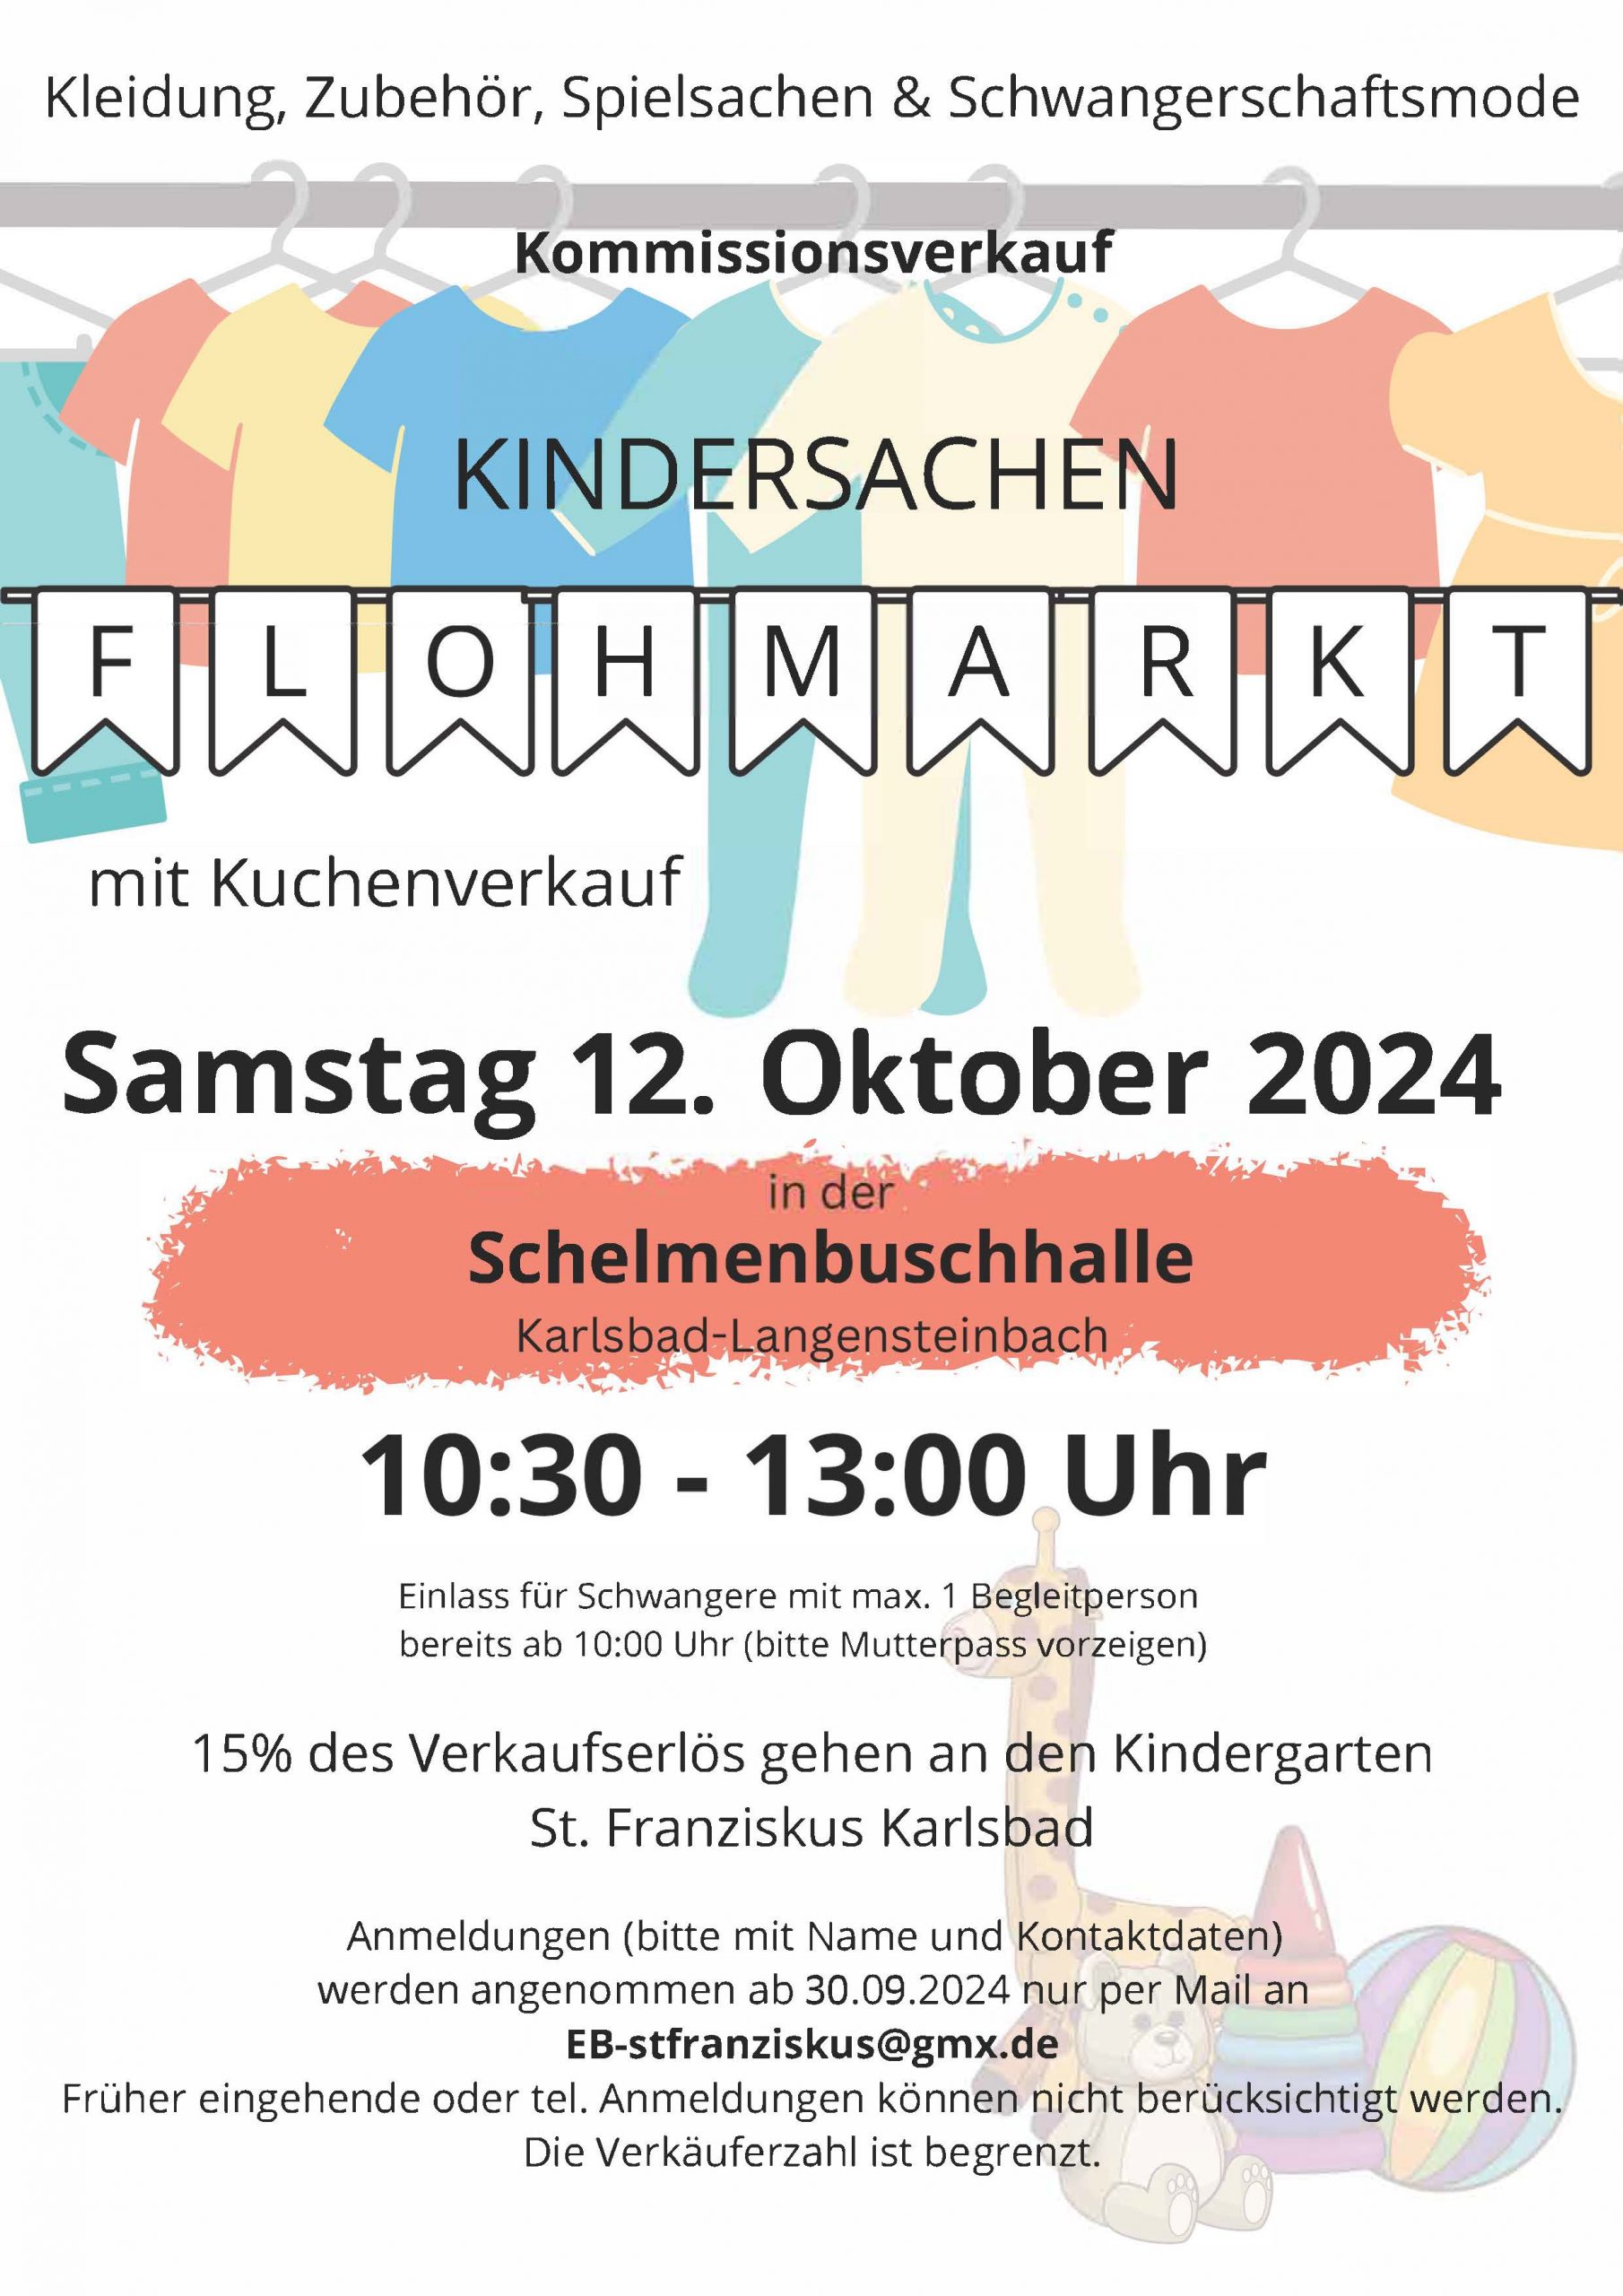 Kindersachen-Kommissions-Flohmarkt | Langensteinbach